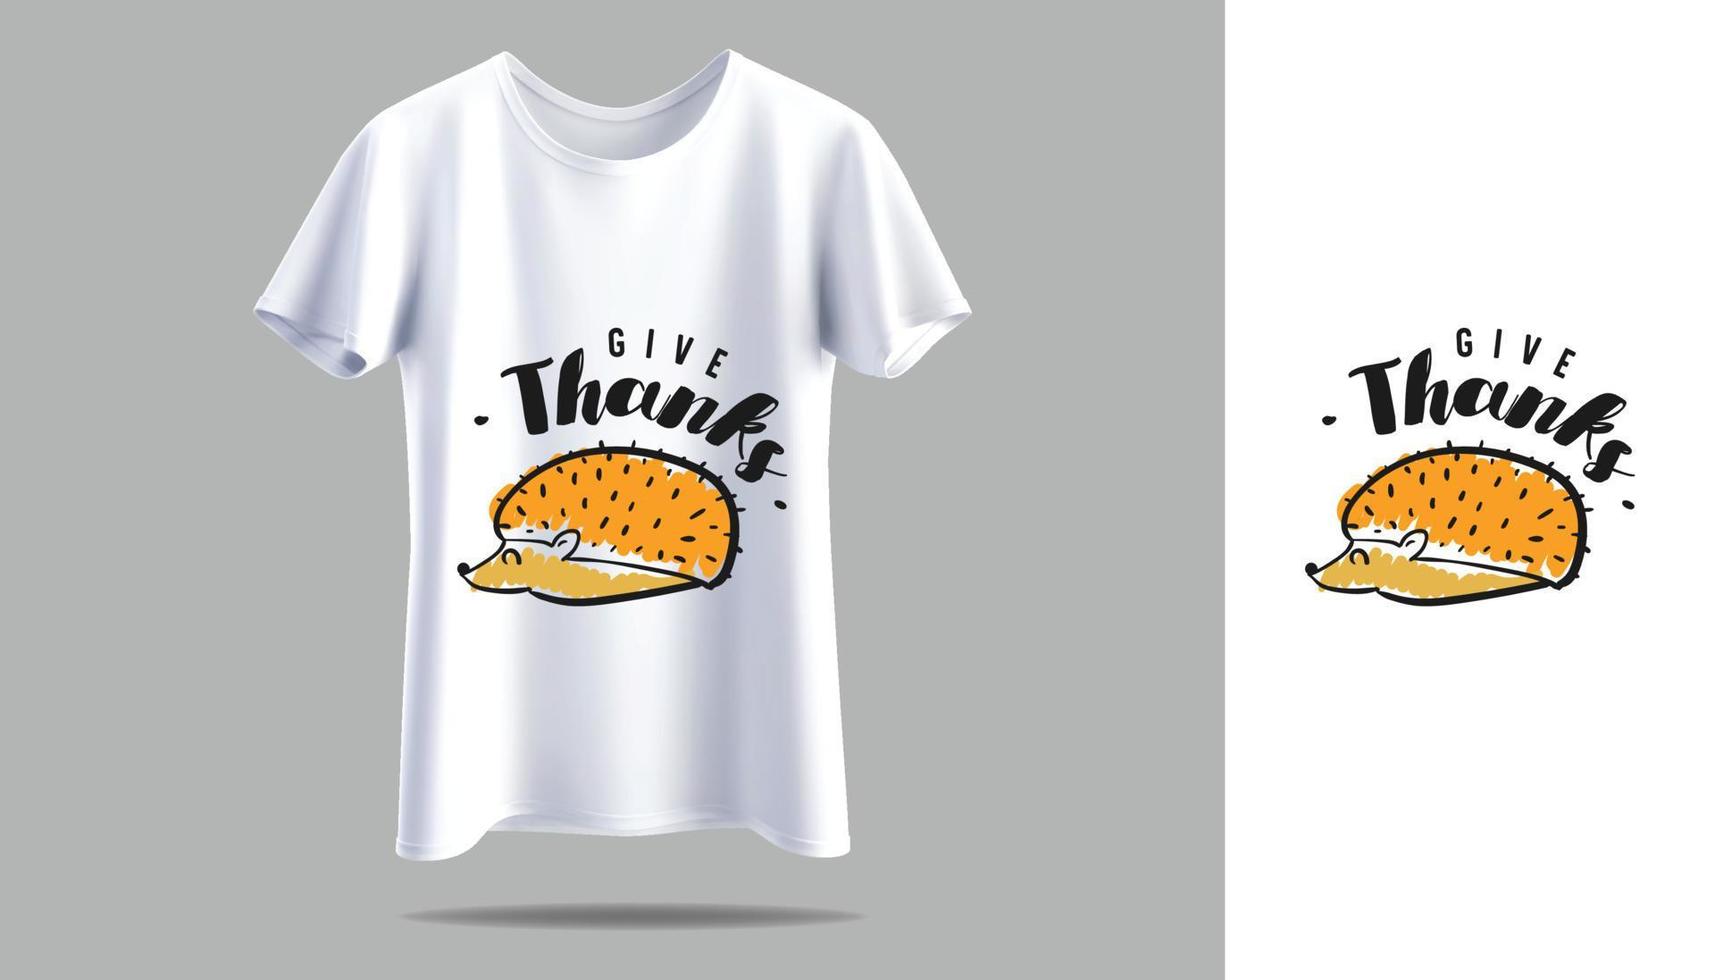 nouveau design de t shirt design de t shirt vectoriel conception de t shirt de jeu vintage typographie t shirt de jeu